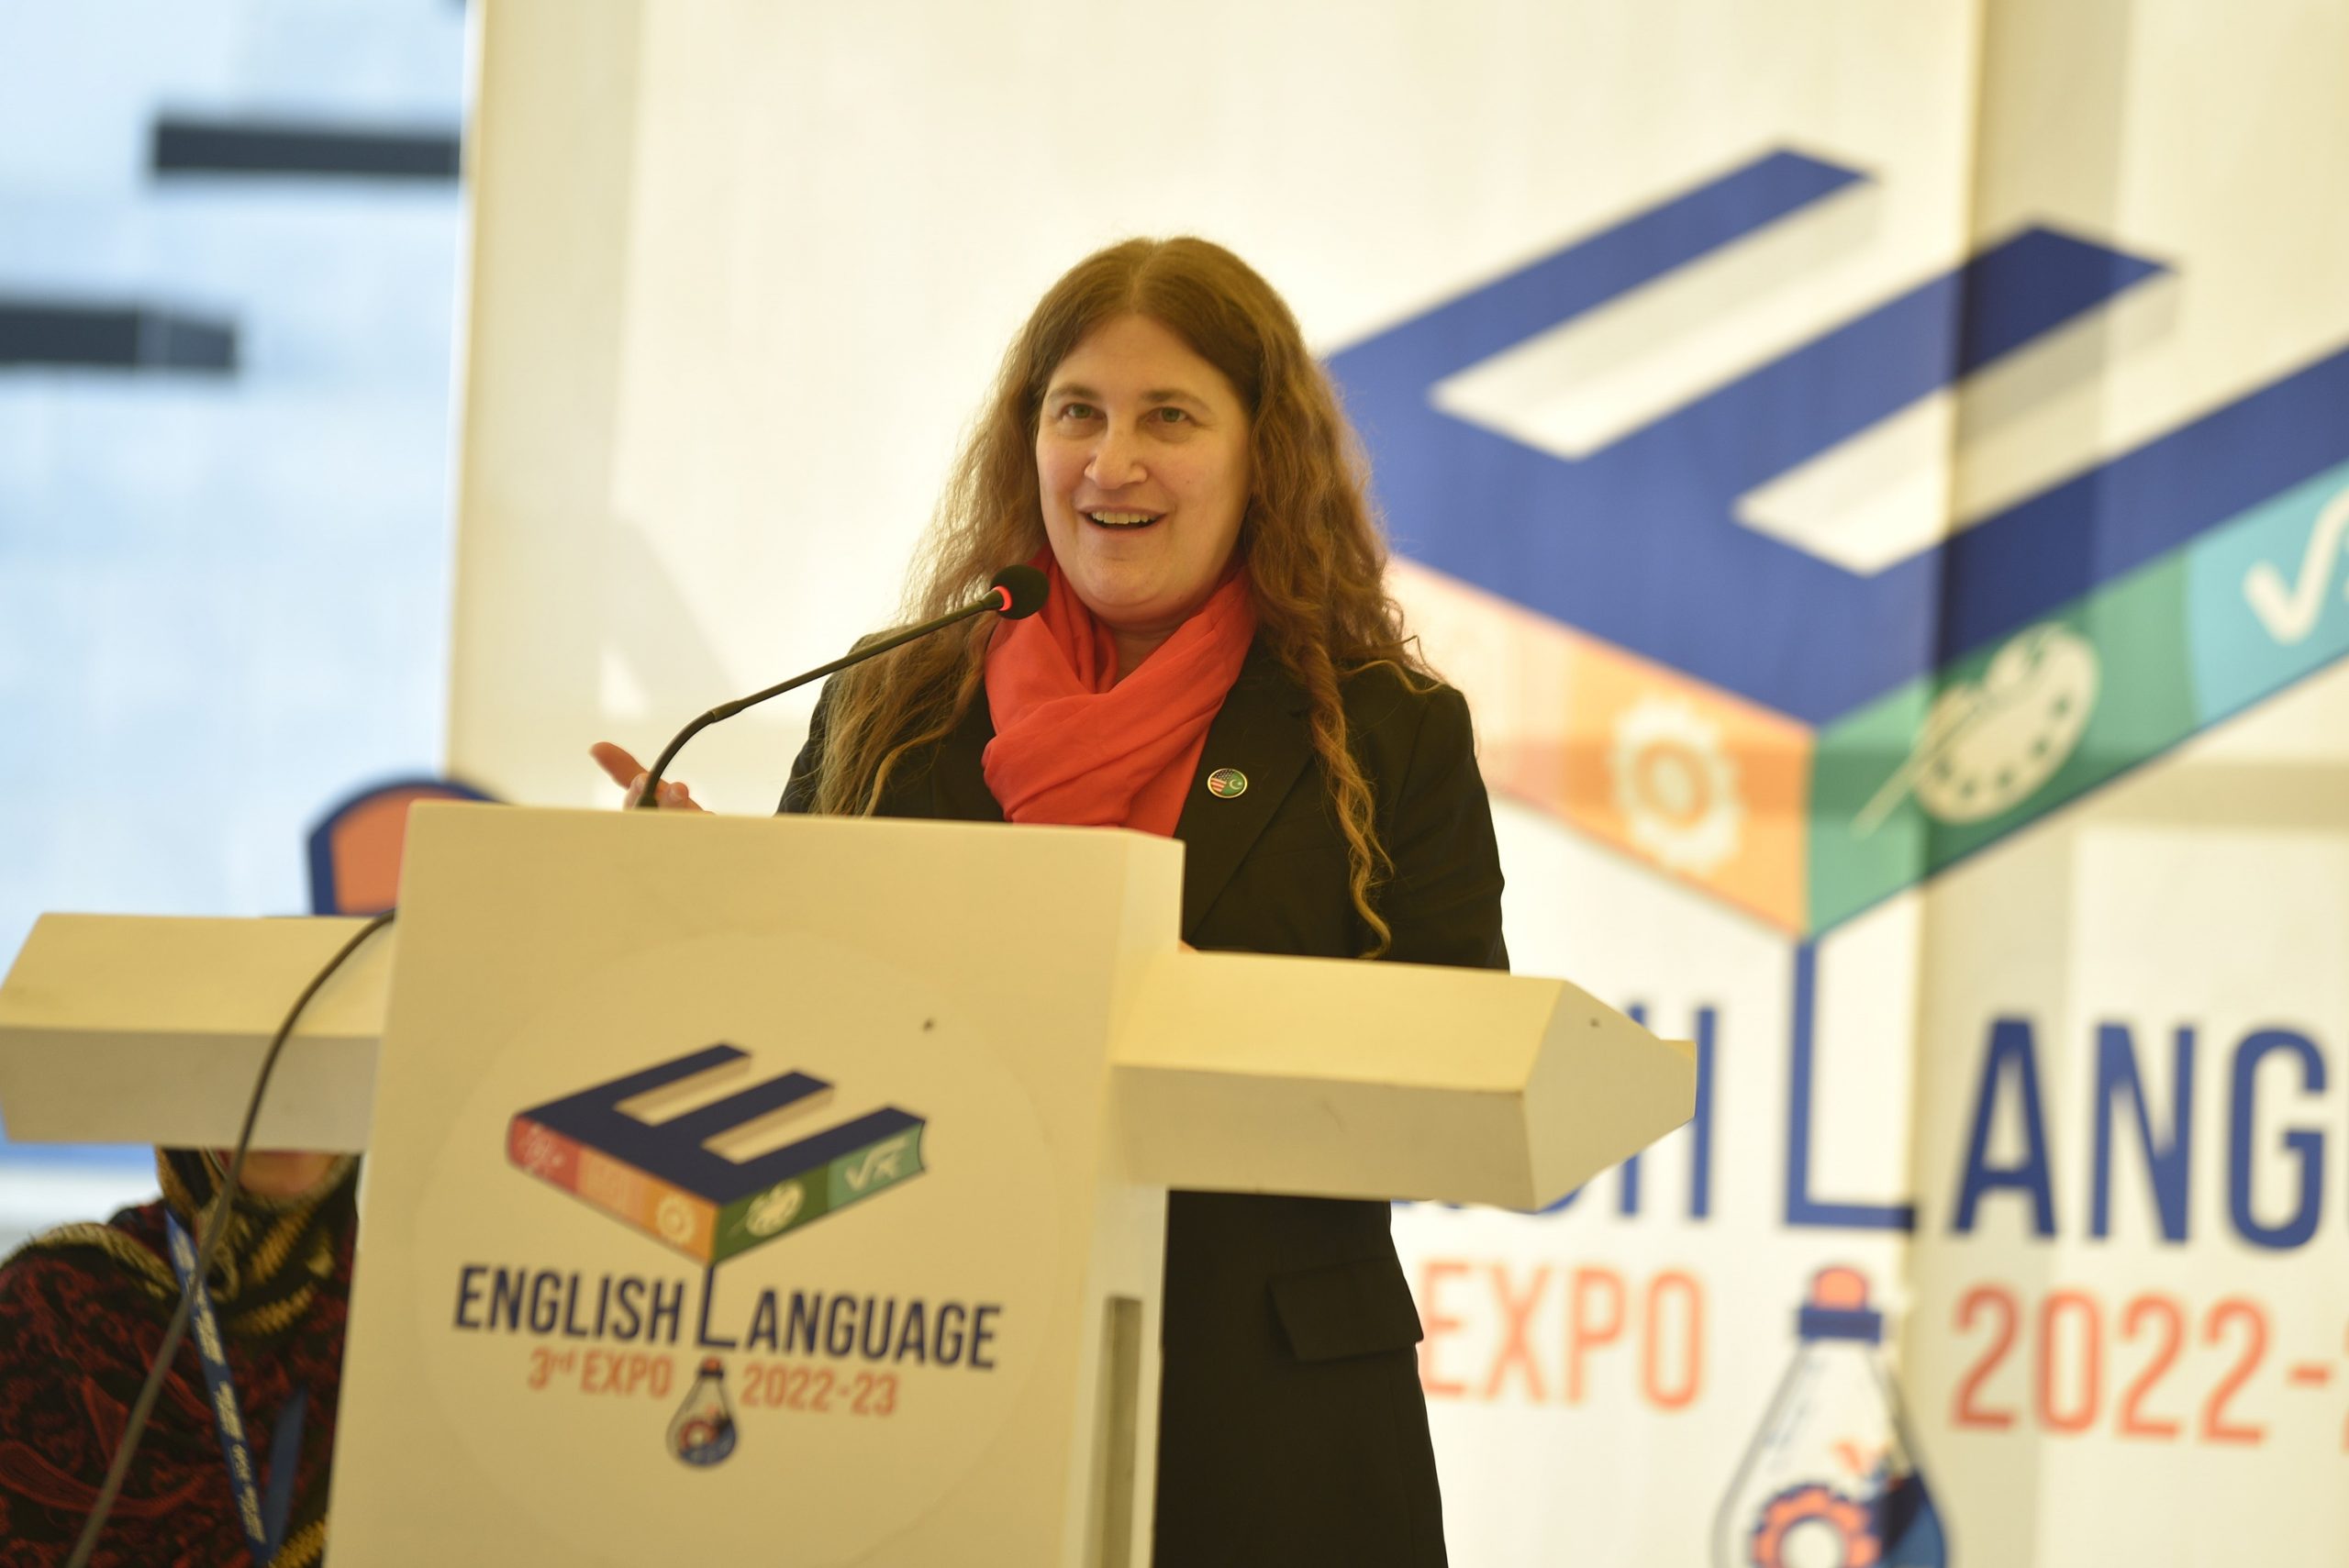 English language Expo